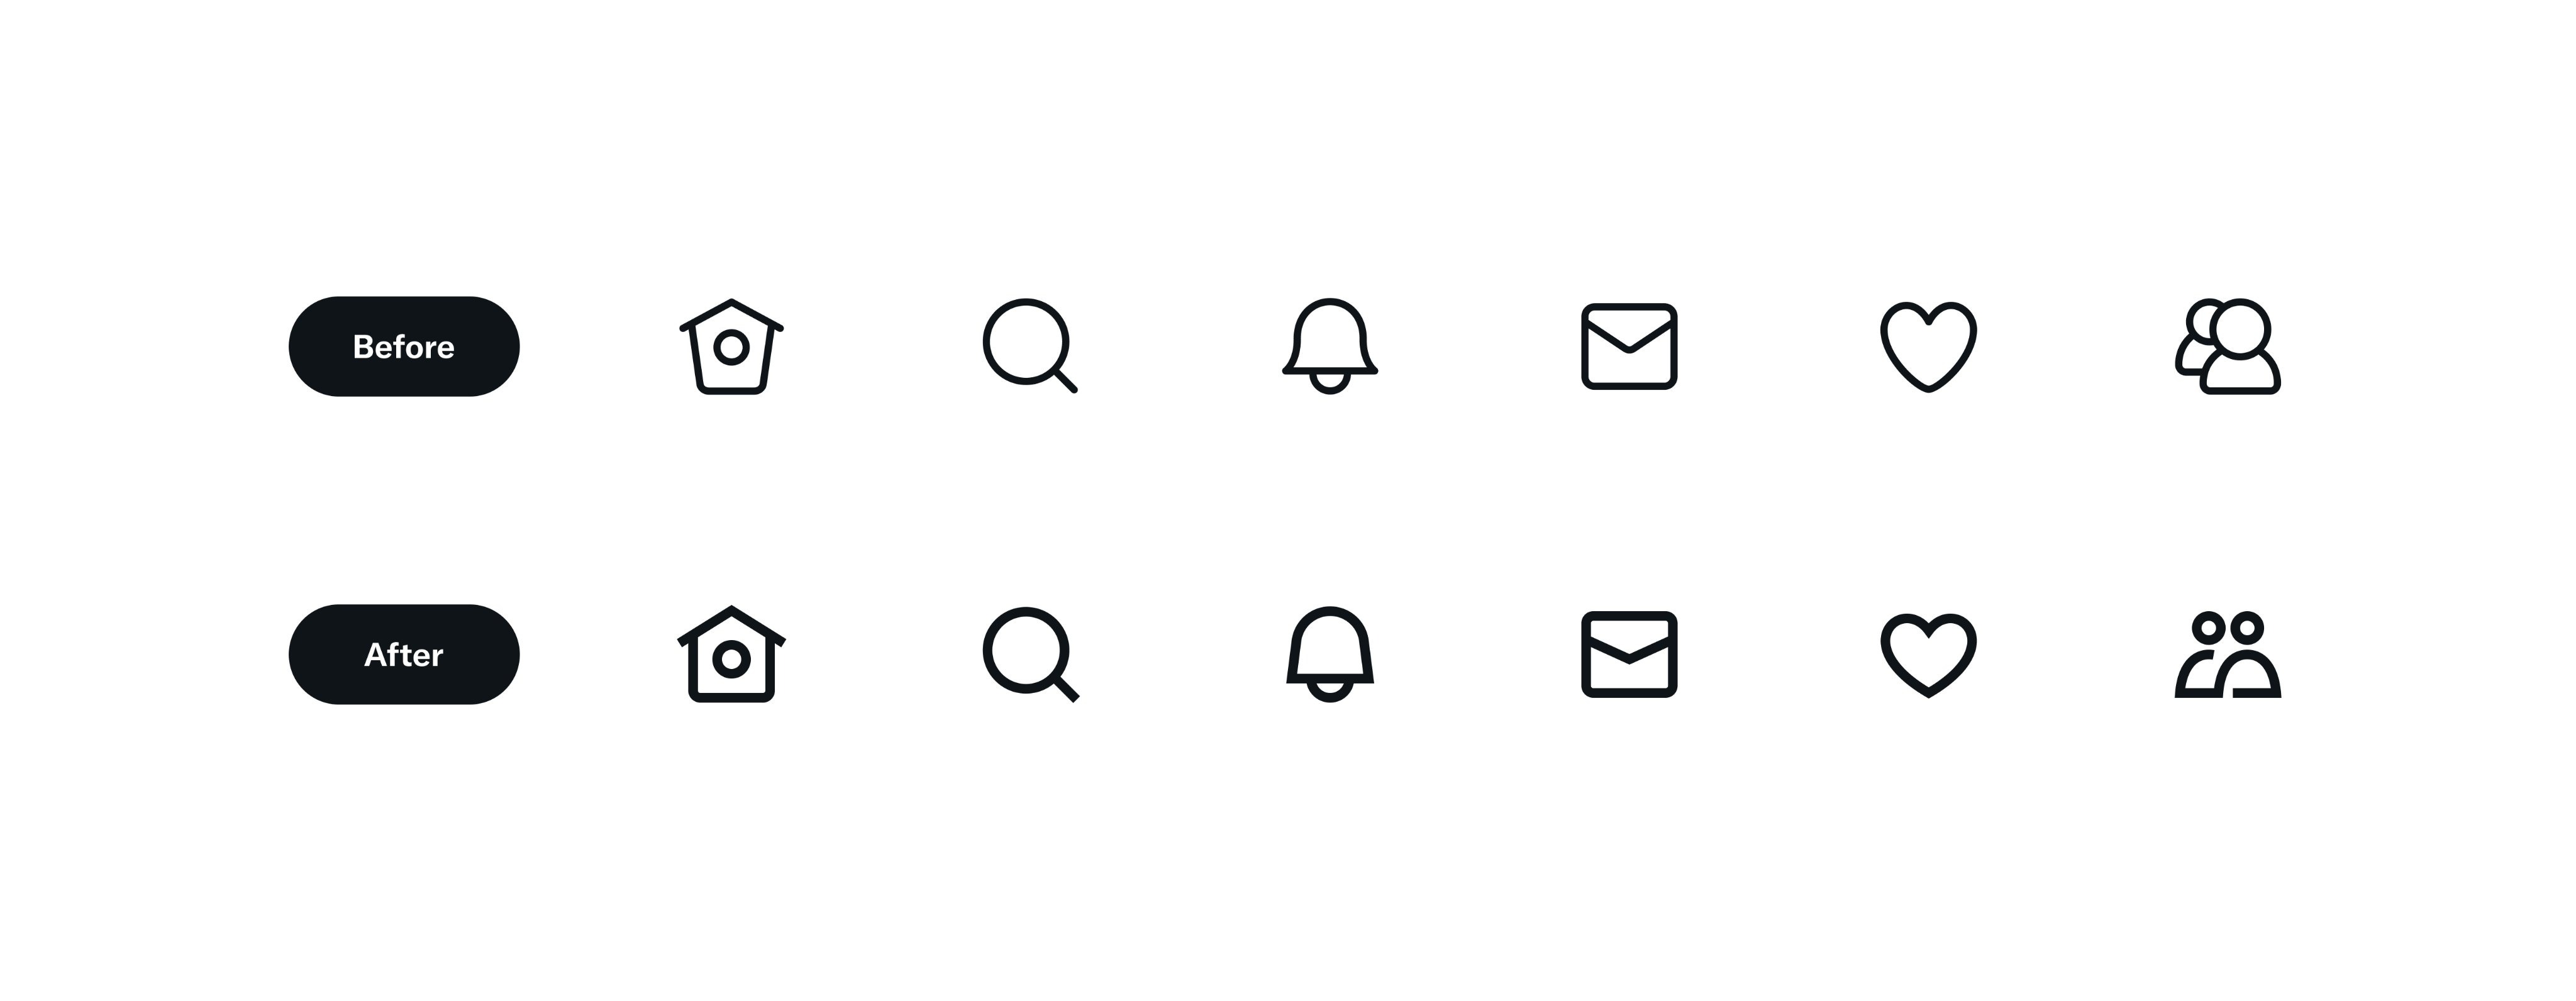 Twitter anunció cambios en el diseño de los iconos dentro de la plataforma. (Twitter)